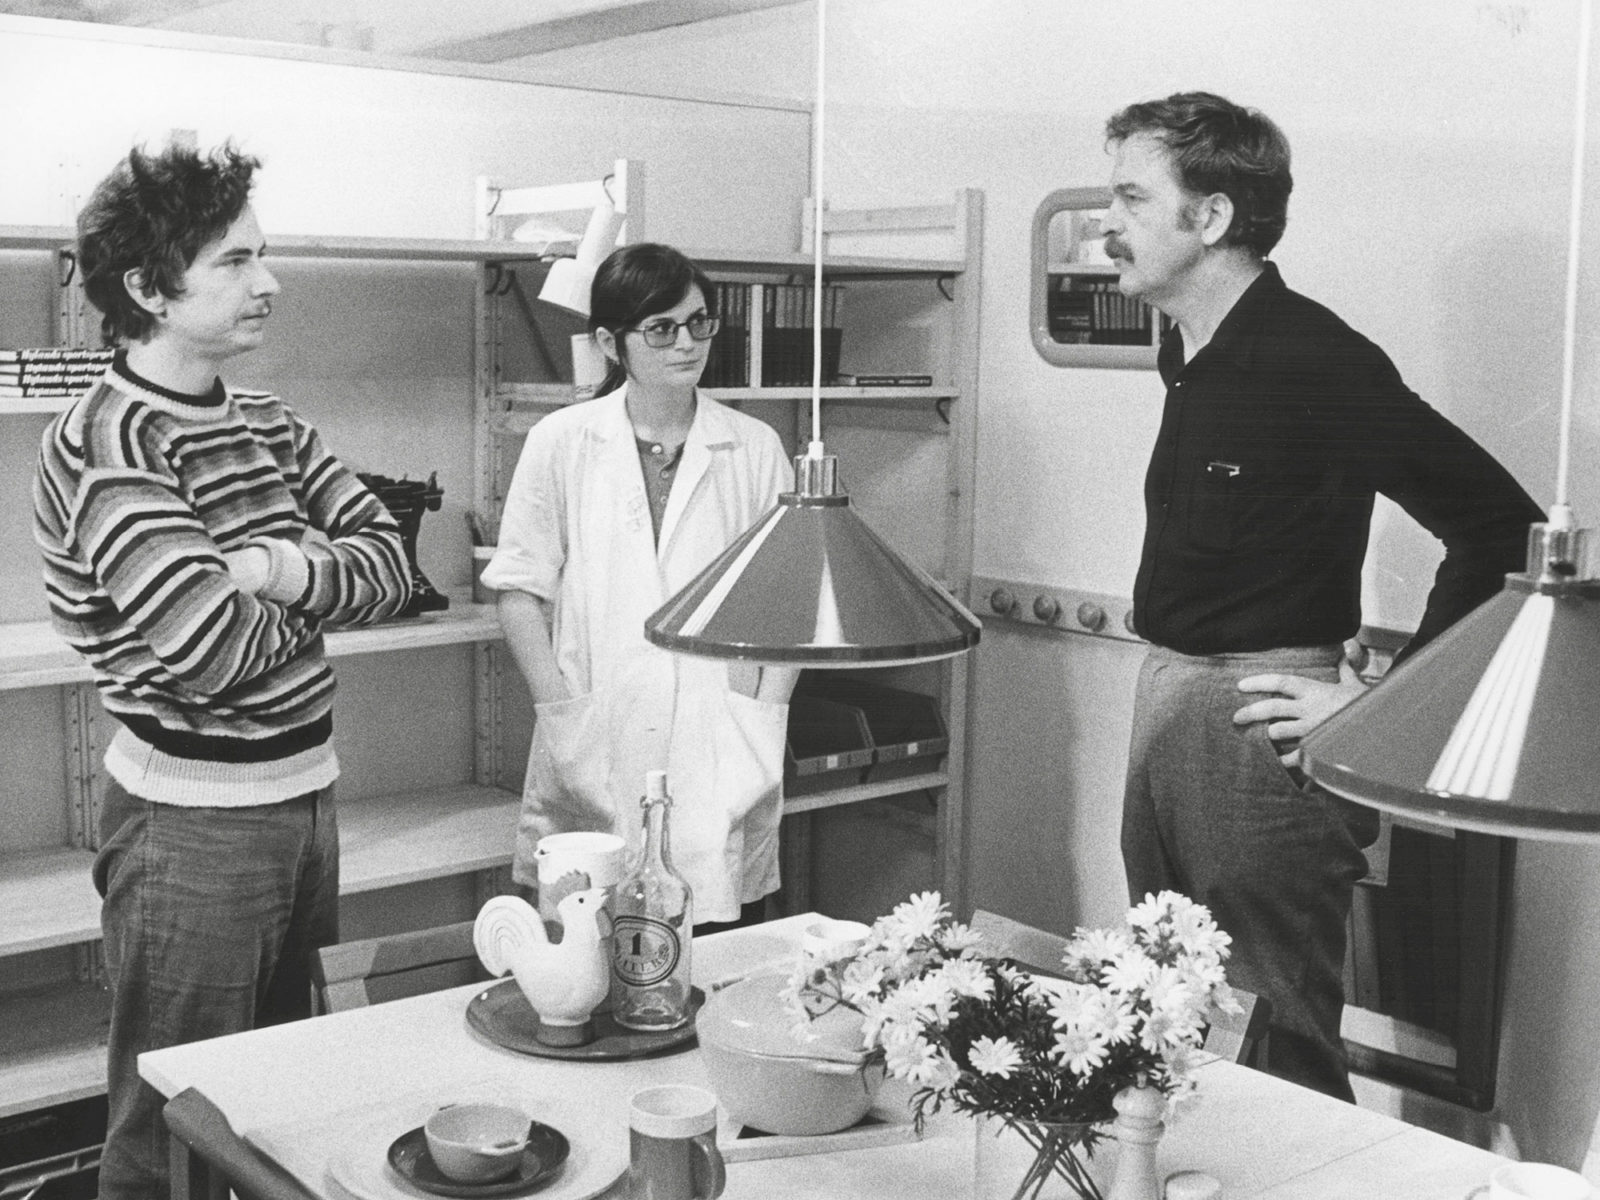 Tre personer står runt ett bord och pratar – Lennart Ekmark, Mary Ekmark och Hans Ax, ledigt klädda i 1970-talsstil.